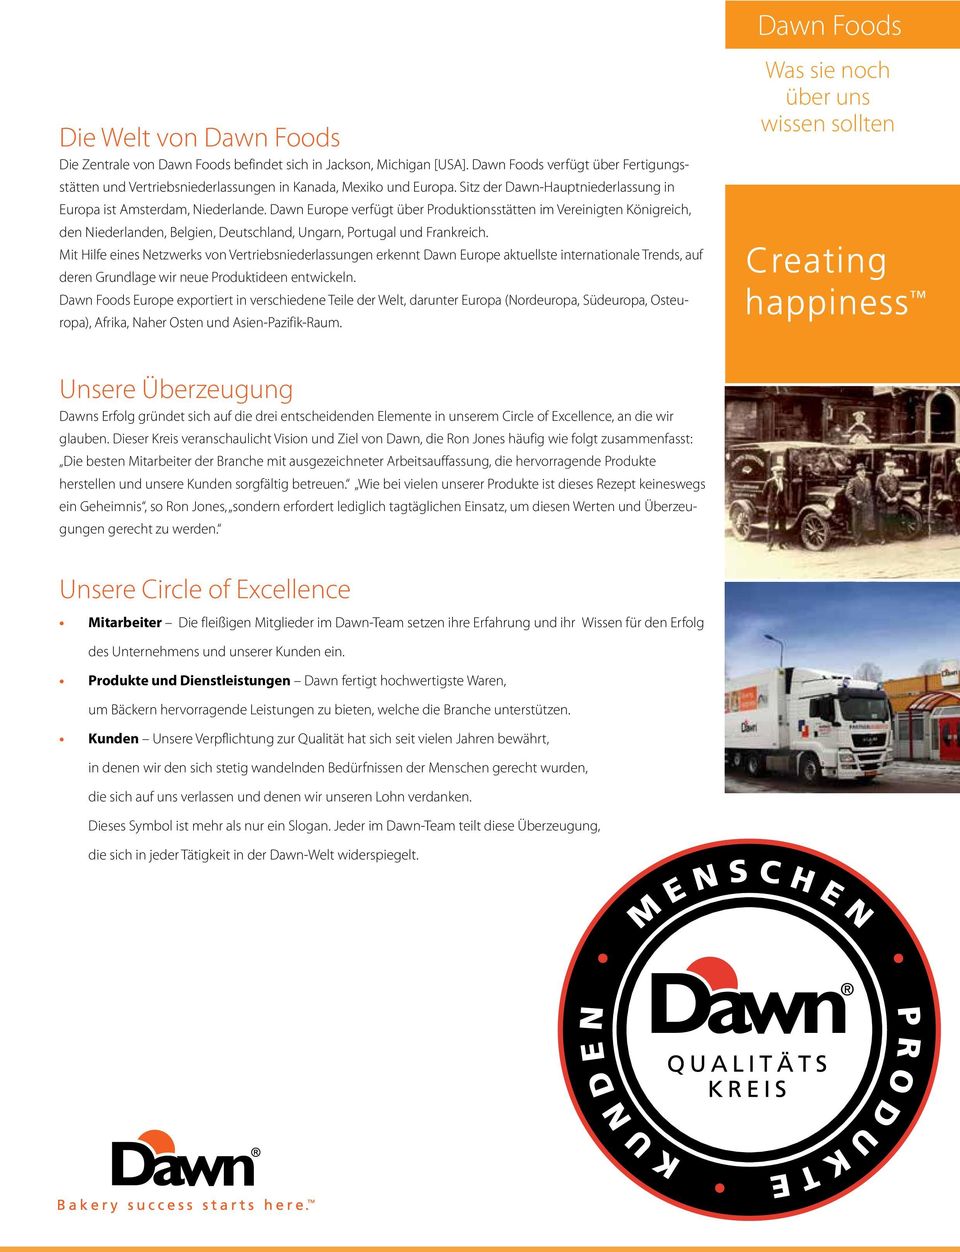 Dawn Europe verfügt über Produktionsstätten im Vereinigten Königreich, den Niederlanden, Belgien, Deutschland, Ungarn, Portugal und Frankreich.